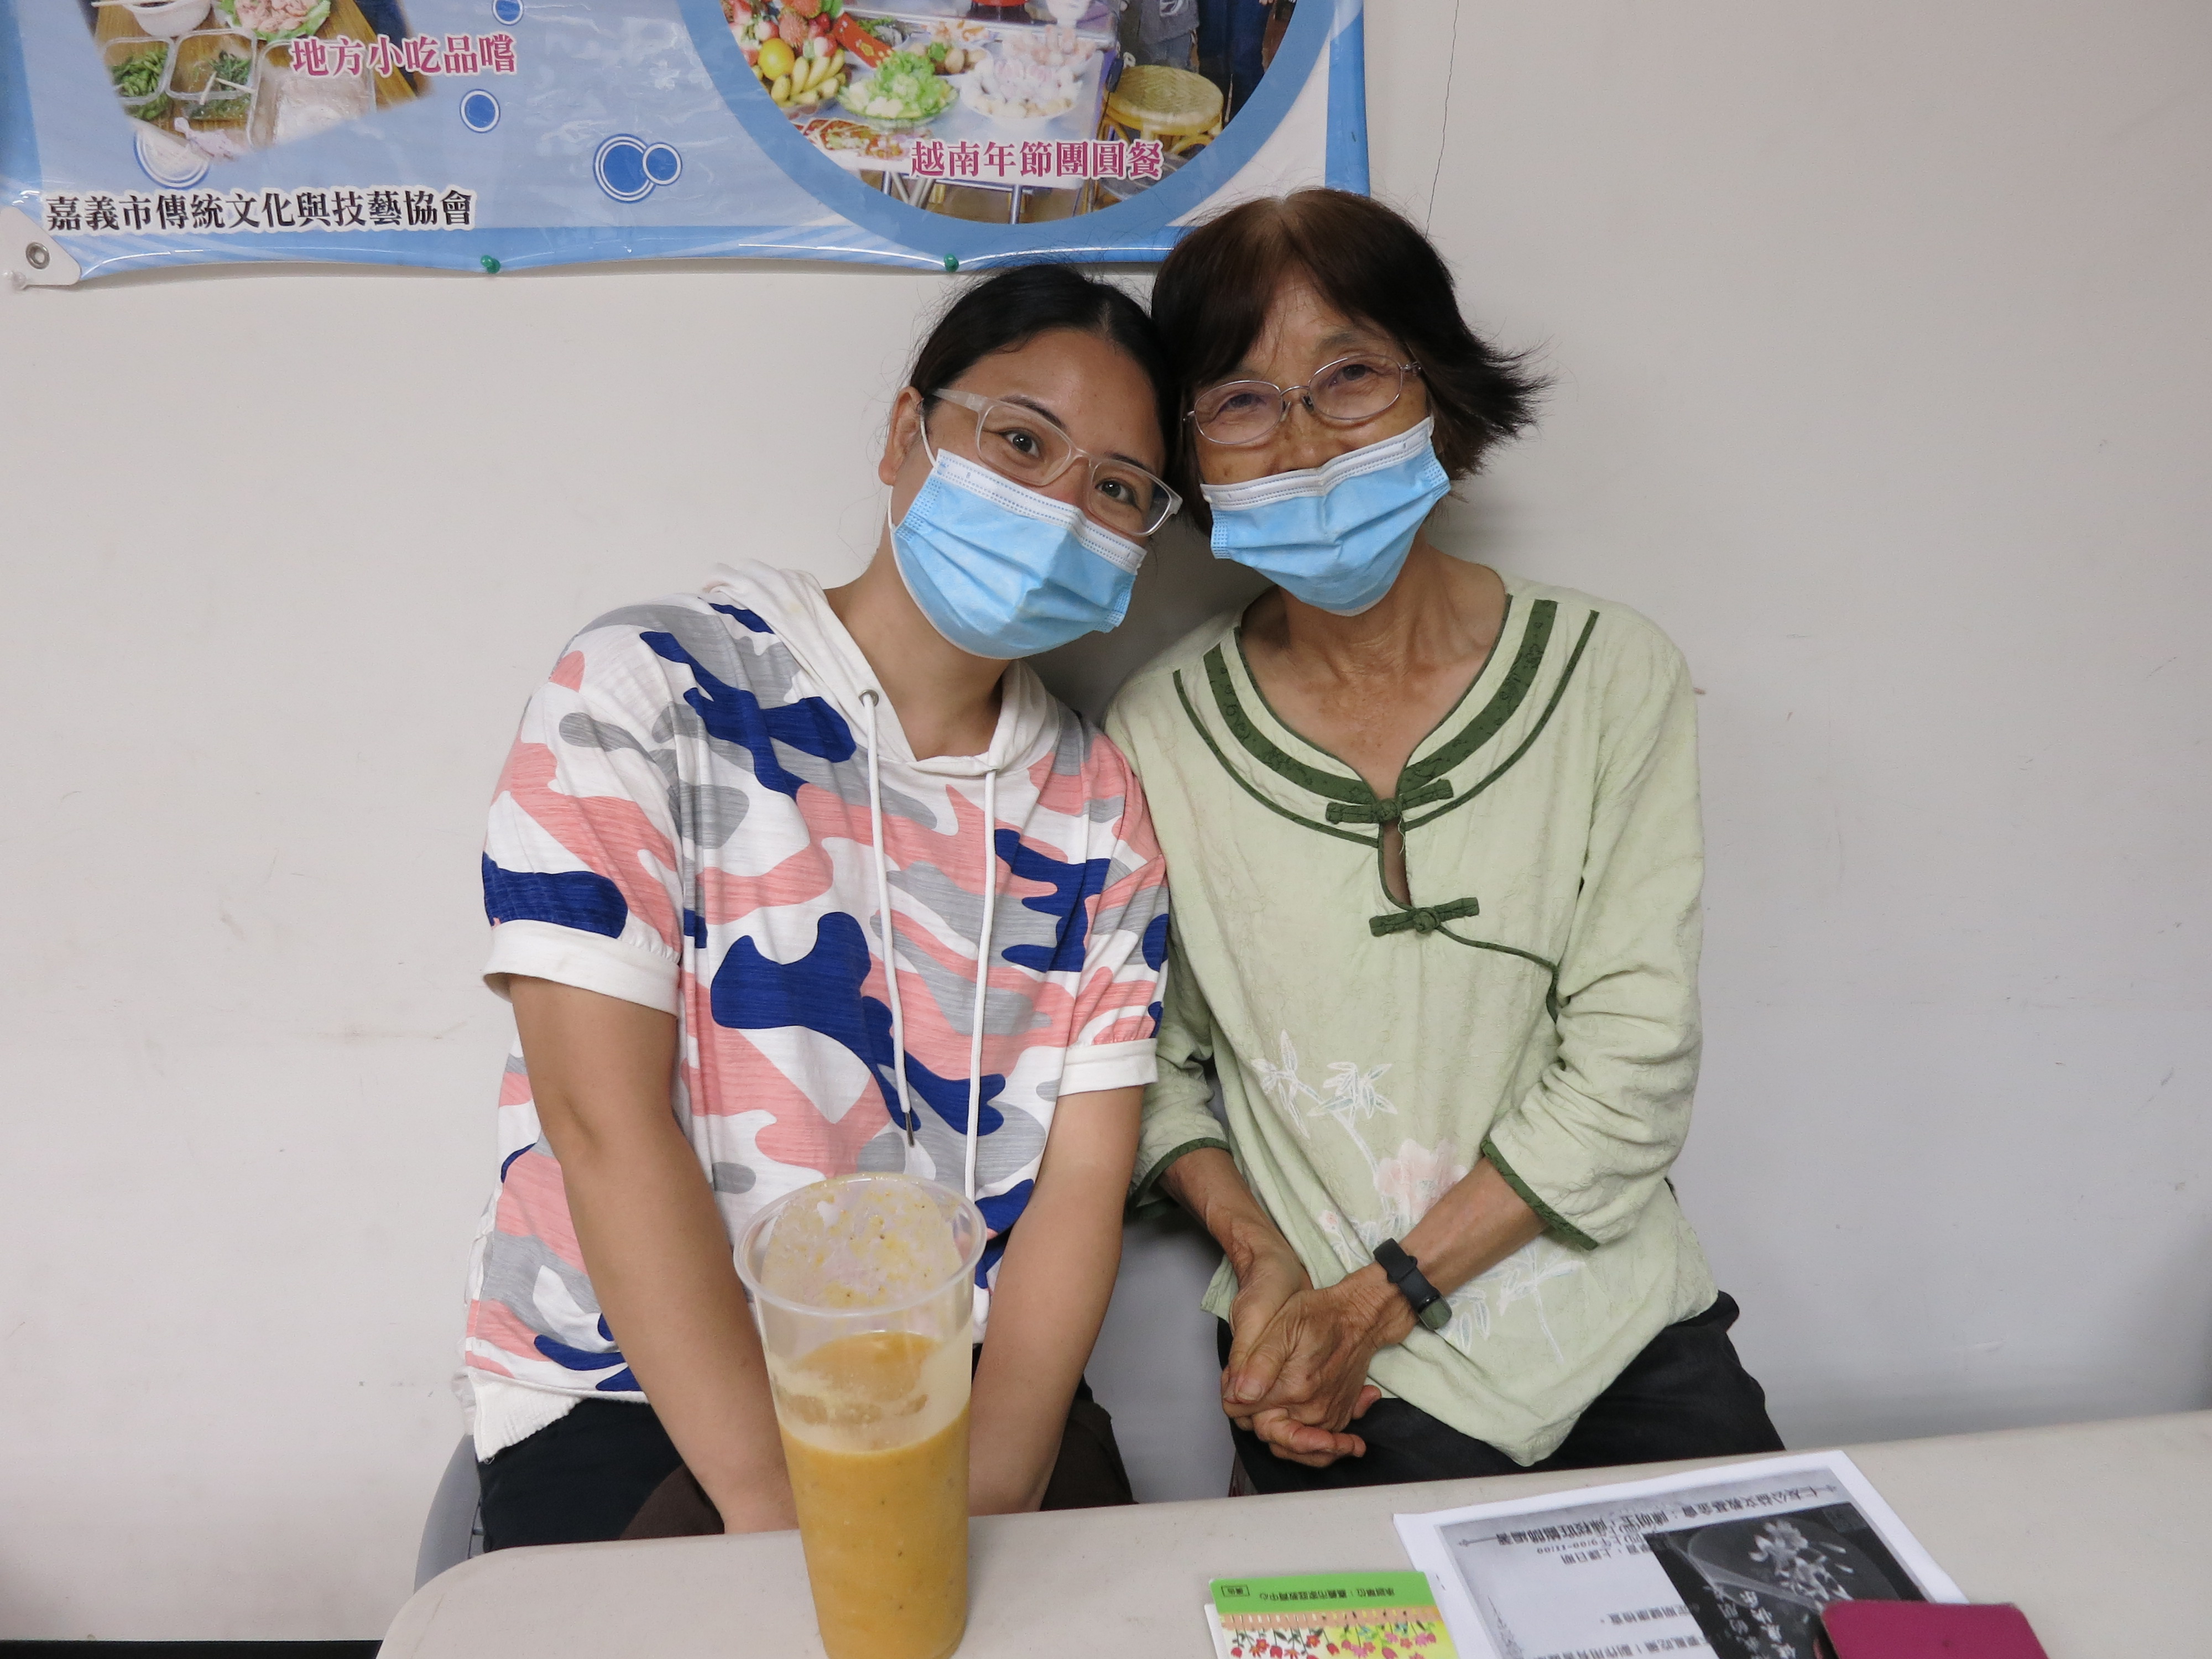 คุณหลี่จากจีนแผ่นดินใหญ่ (ซ้าย) ถูกแม่สามีของเธอ (ขวา) นำตัวไปเข้าร่วมหลักสูตรการศึกษาครอบครัวที่จัดโดยกรมตรวจคนเข้าเมืองเพื่อให้เธอคุ้นเคยกับกฎหมายและระเบียบข้อบังคับมากขึ้น รูปภาพ/โดย สถานีบริการเมืองเจียอี้